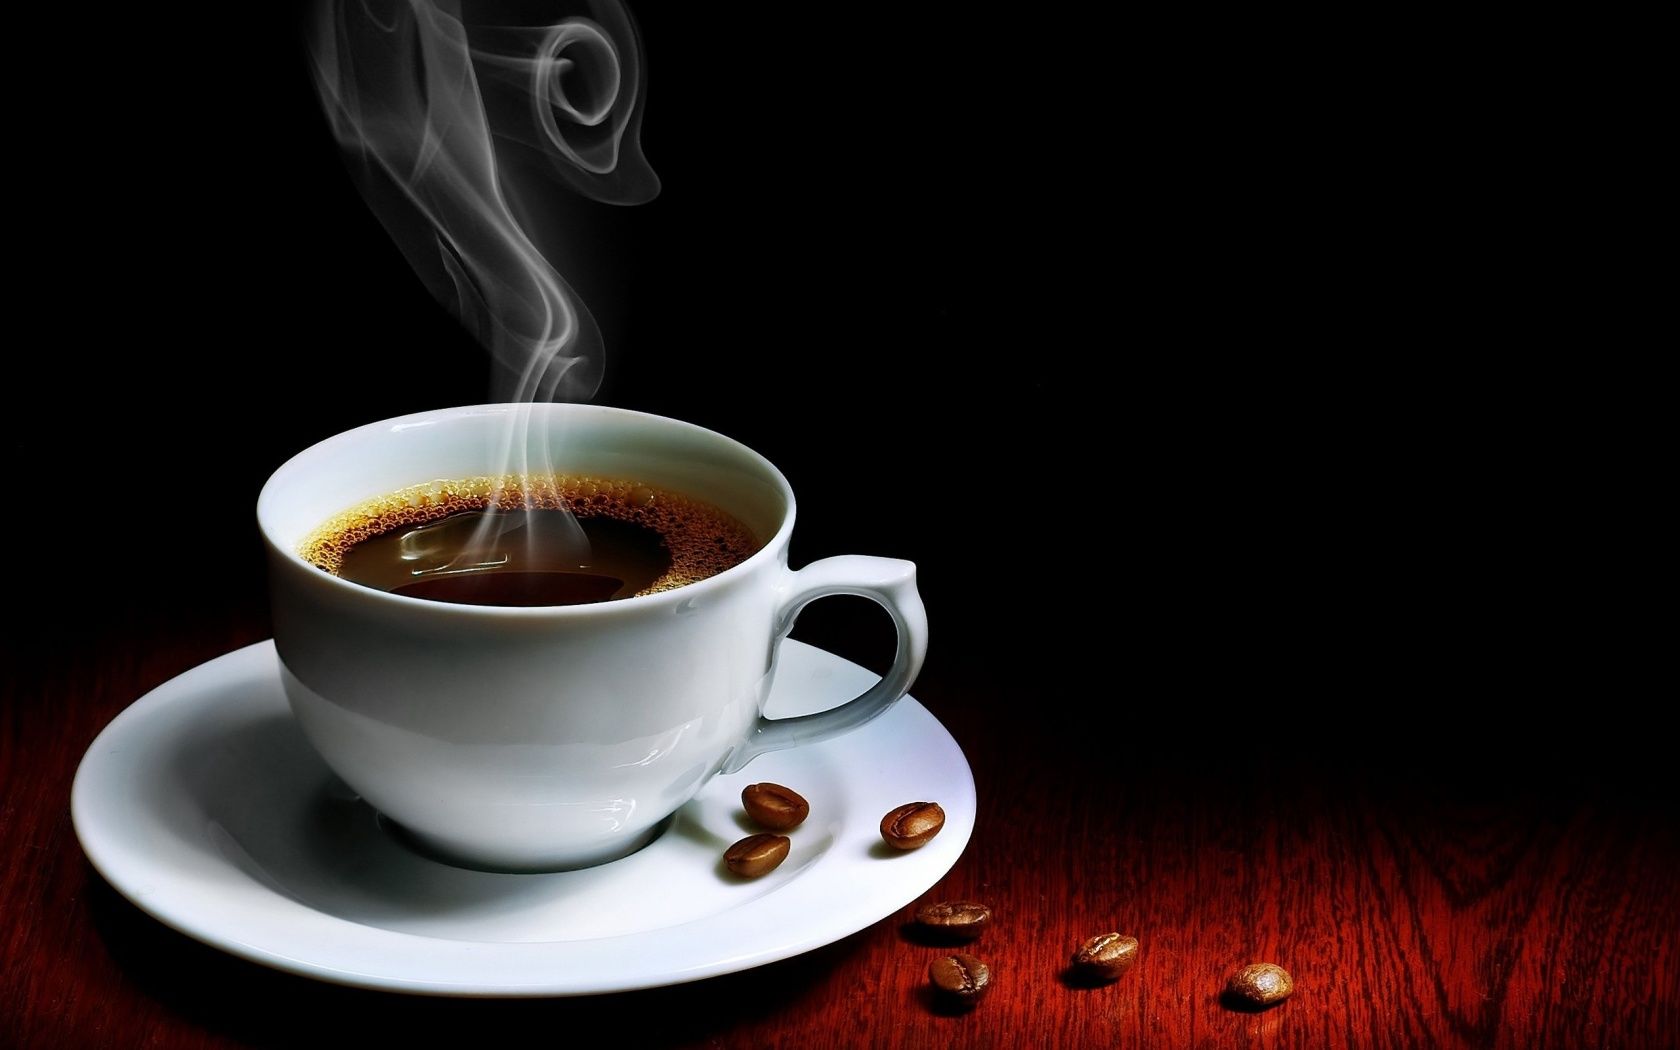 Sih Coffee Shop Itu Surga Buat Yang Suka Nongkrong Sendirian